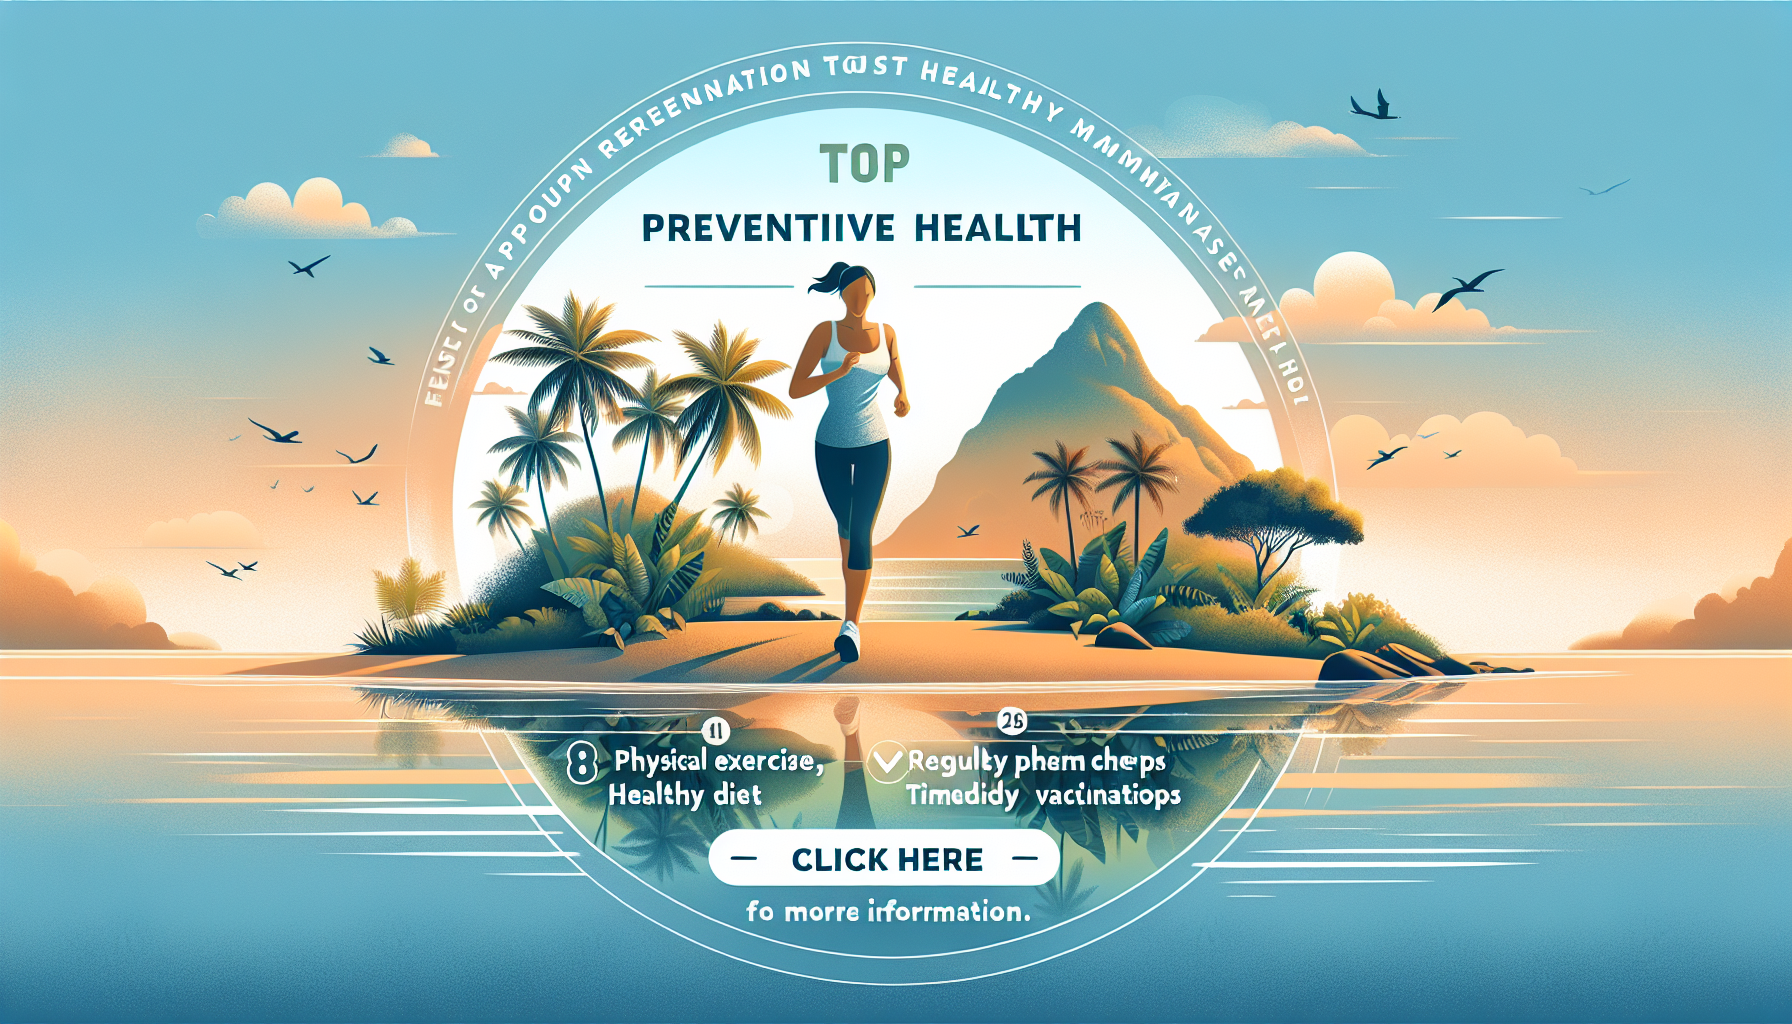 découvrez les dispositifs de suivi préventif pour la mutuelle santé à la réunion et assurez-vous de rester en bonne santé tout au long de l'année grâce à notre guide complet.